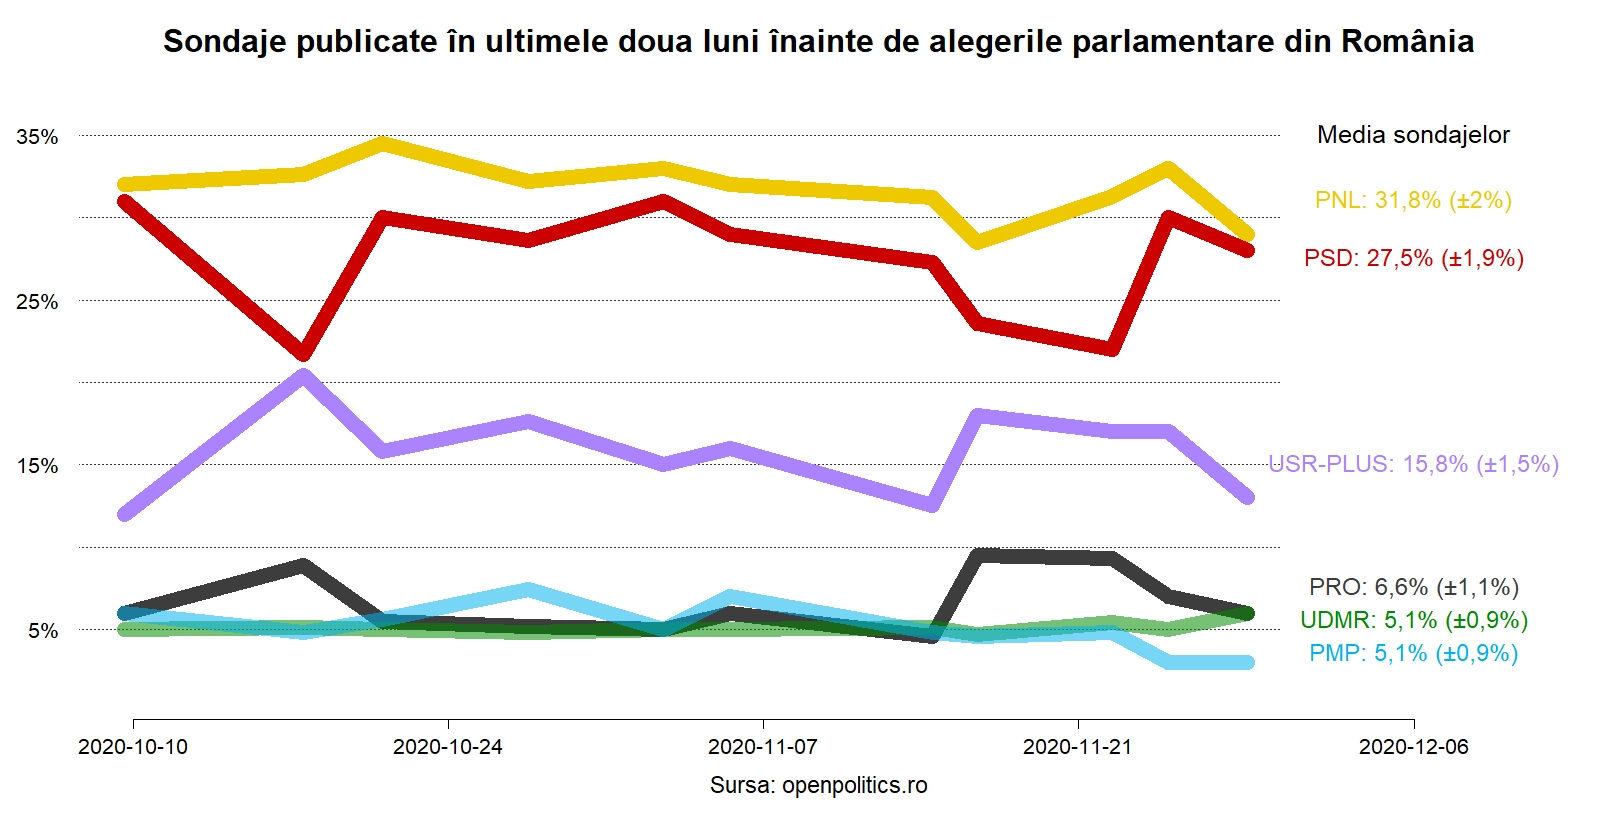 Media a 11 sondaje din ultima lună: PNL – 31,8%, PSD – 27,5%, USR PLUS 15,8%